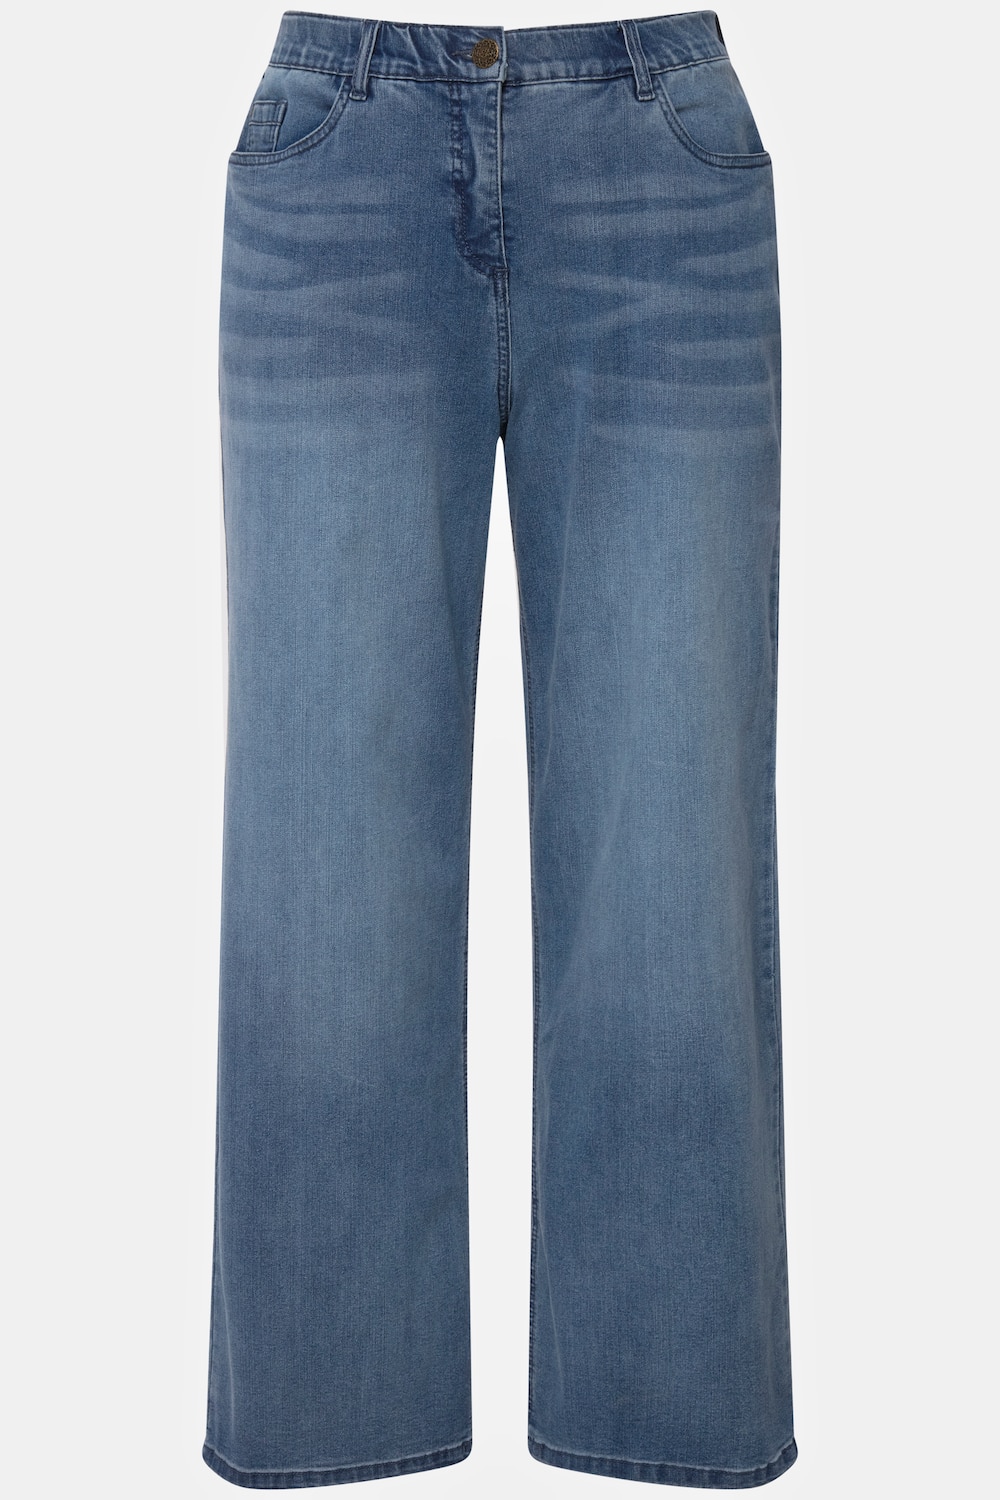 Grote Maten jeans Mary, Dames, blauw, Maat: 46, Katoen/Polyester/Viscose, Ulla Popken